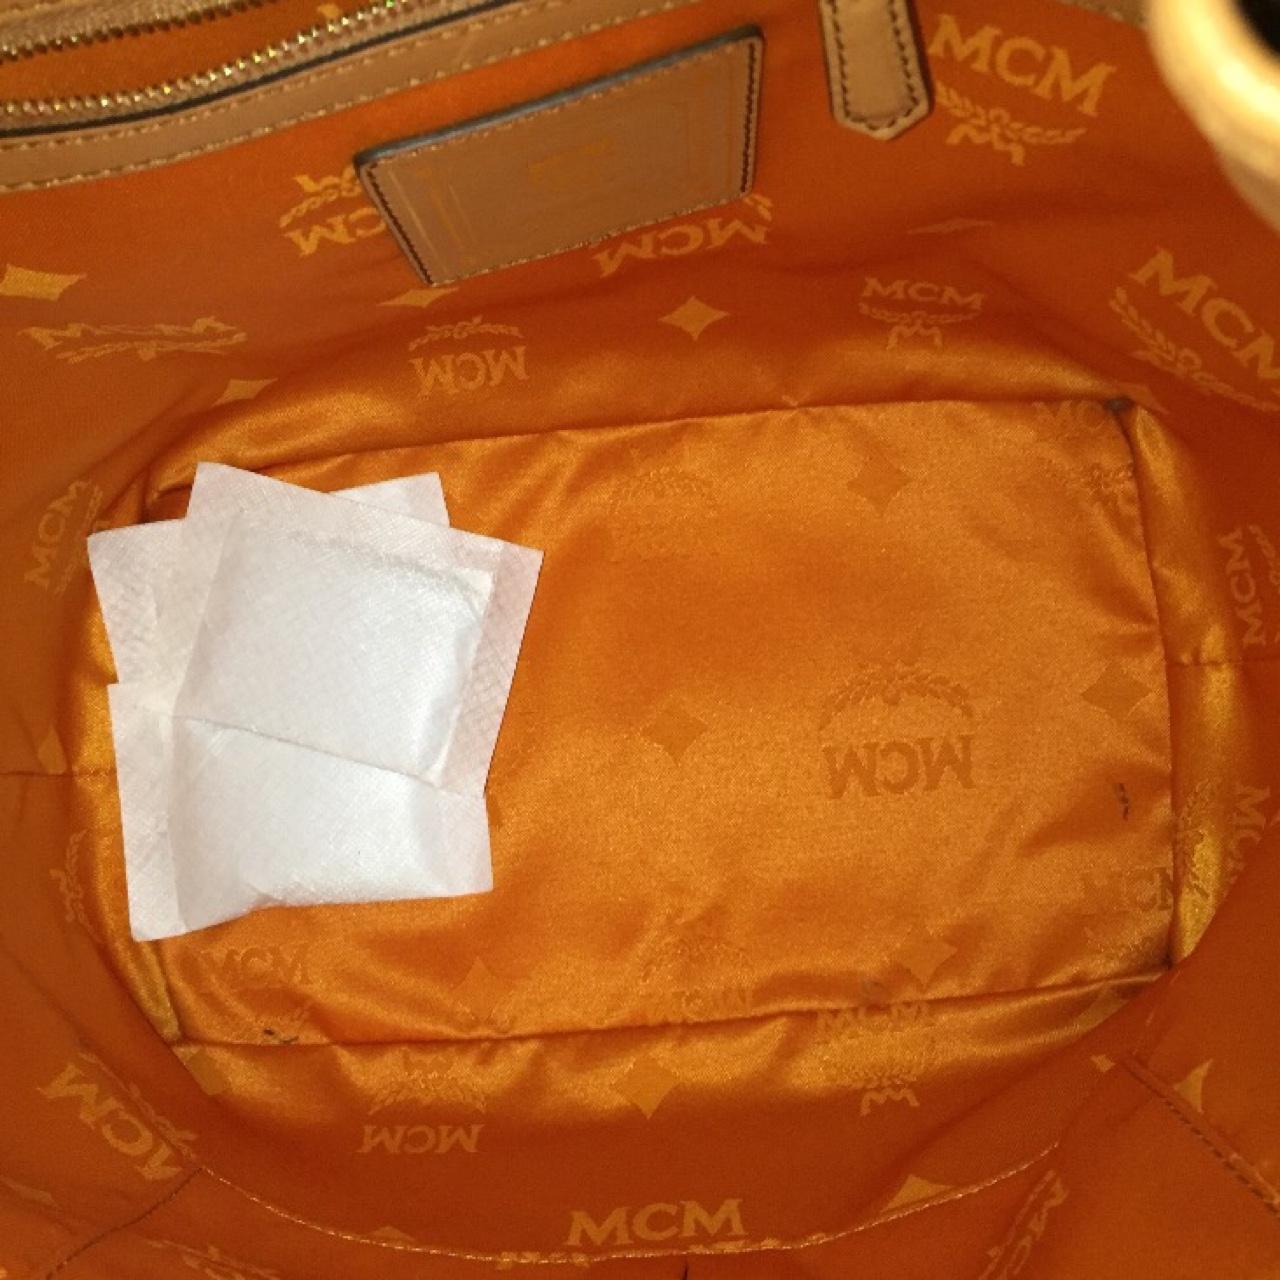 MCM drawstring bucket bag in excellent vintage - Depop